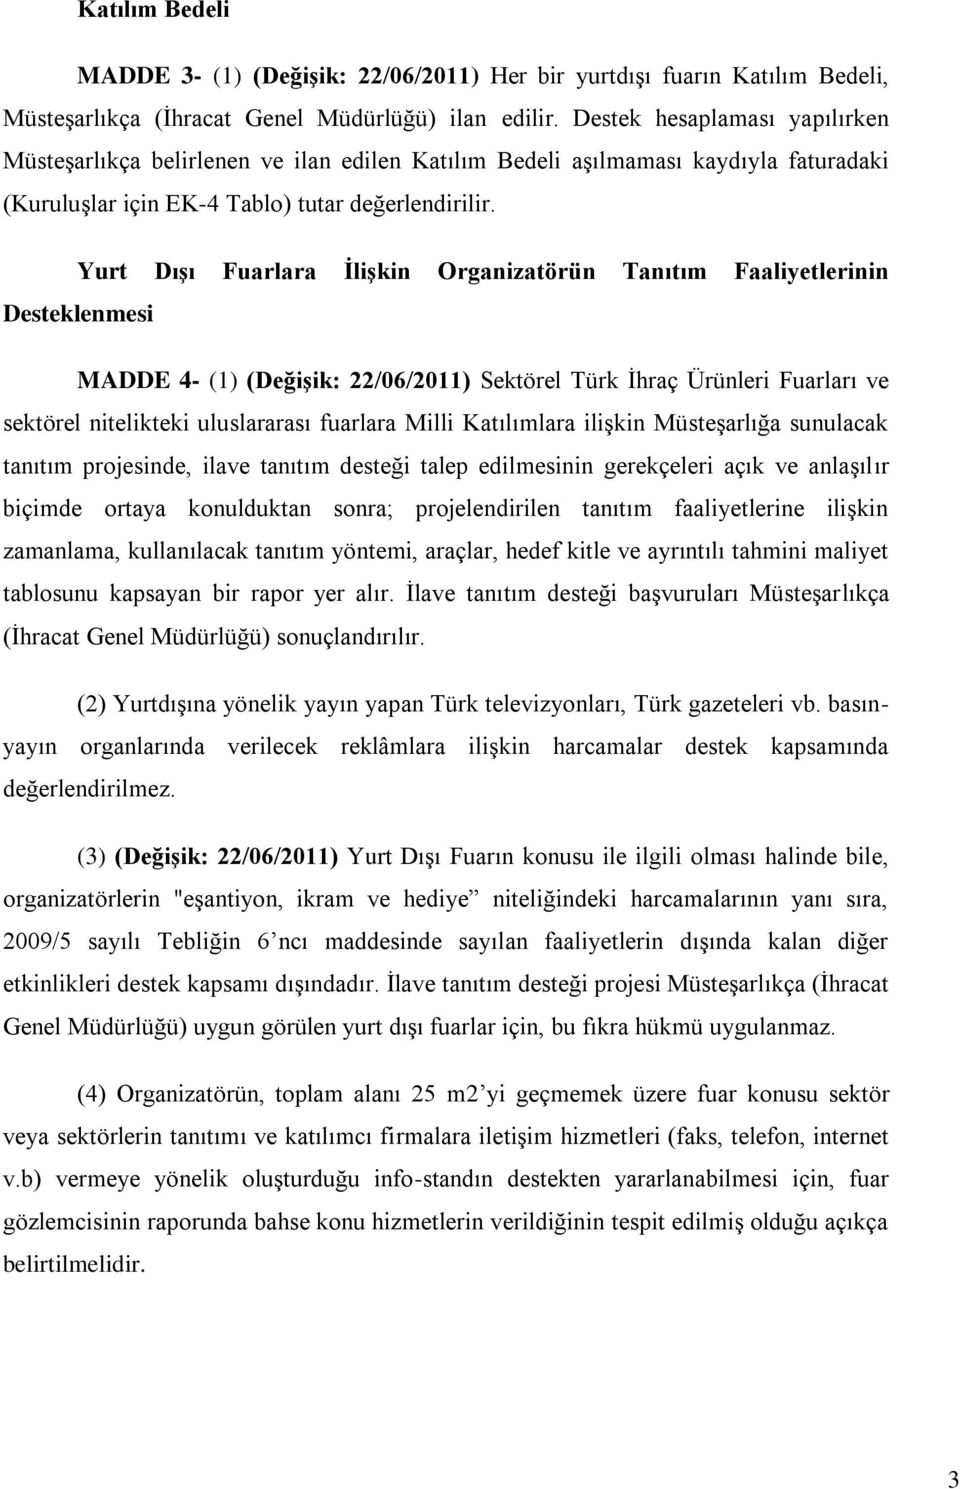 Yurt Dışı Fuarlara İlişkin Organizatörün Tanıtım Faaliyetlerinin Desteklenmesi MADDE 4- (1) (Değişik: 22/06/2011) Sektörel Türk İhraç Ürünleri Fuarları ve sektörel nitelikteki uluslararası fuarlara